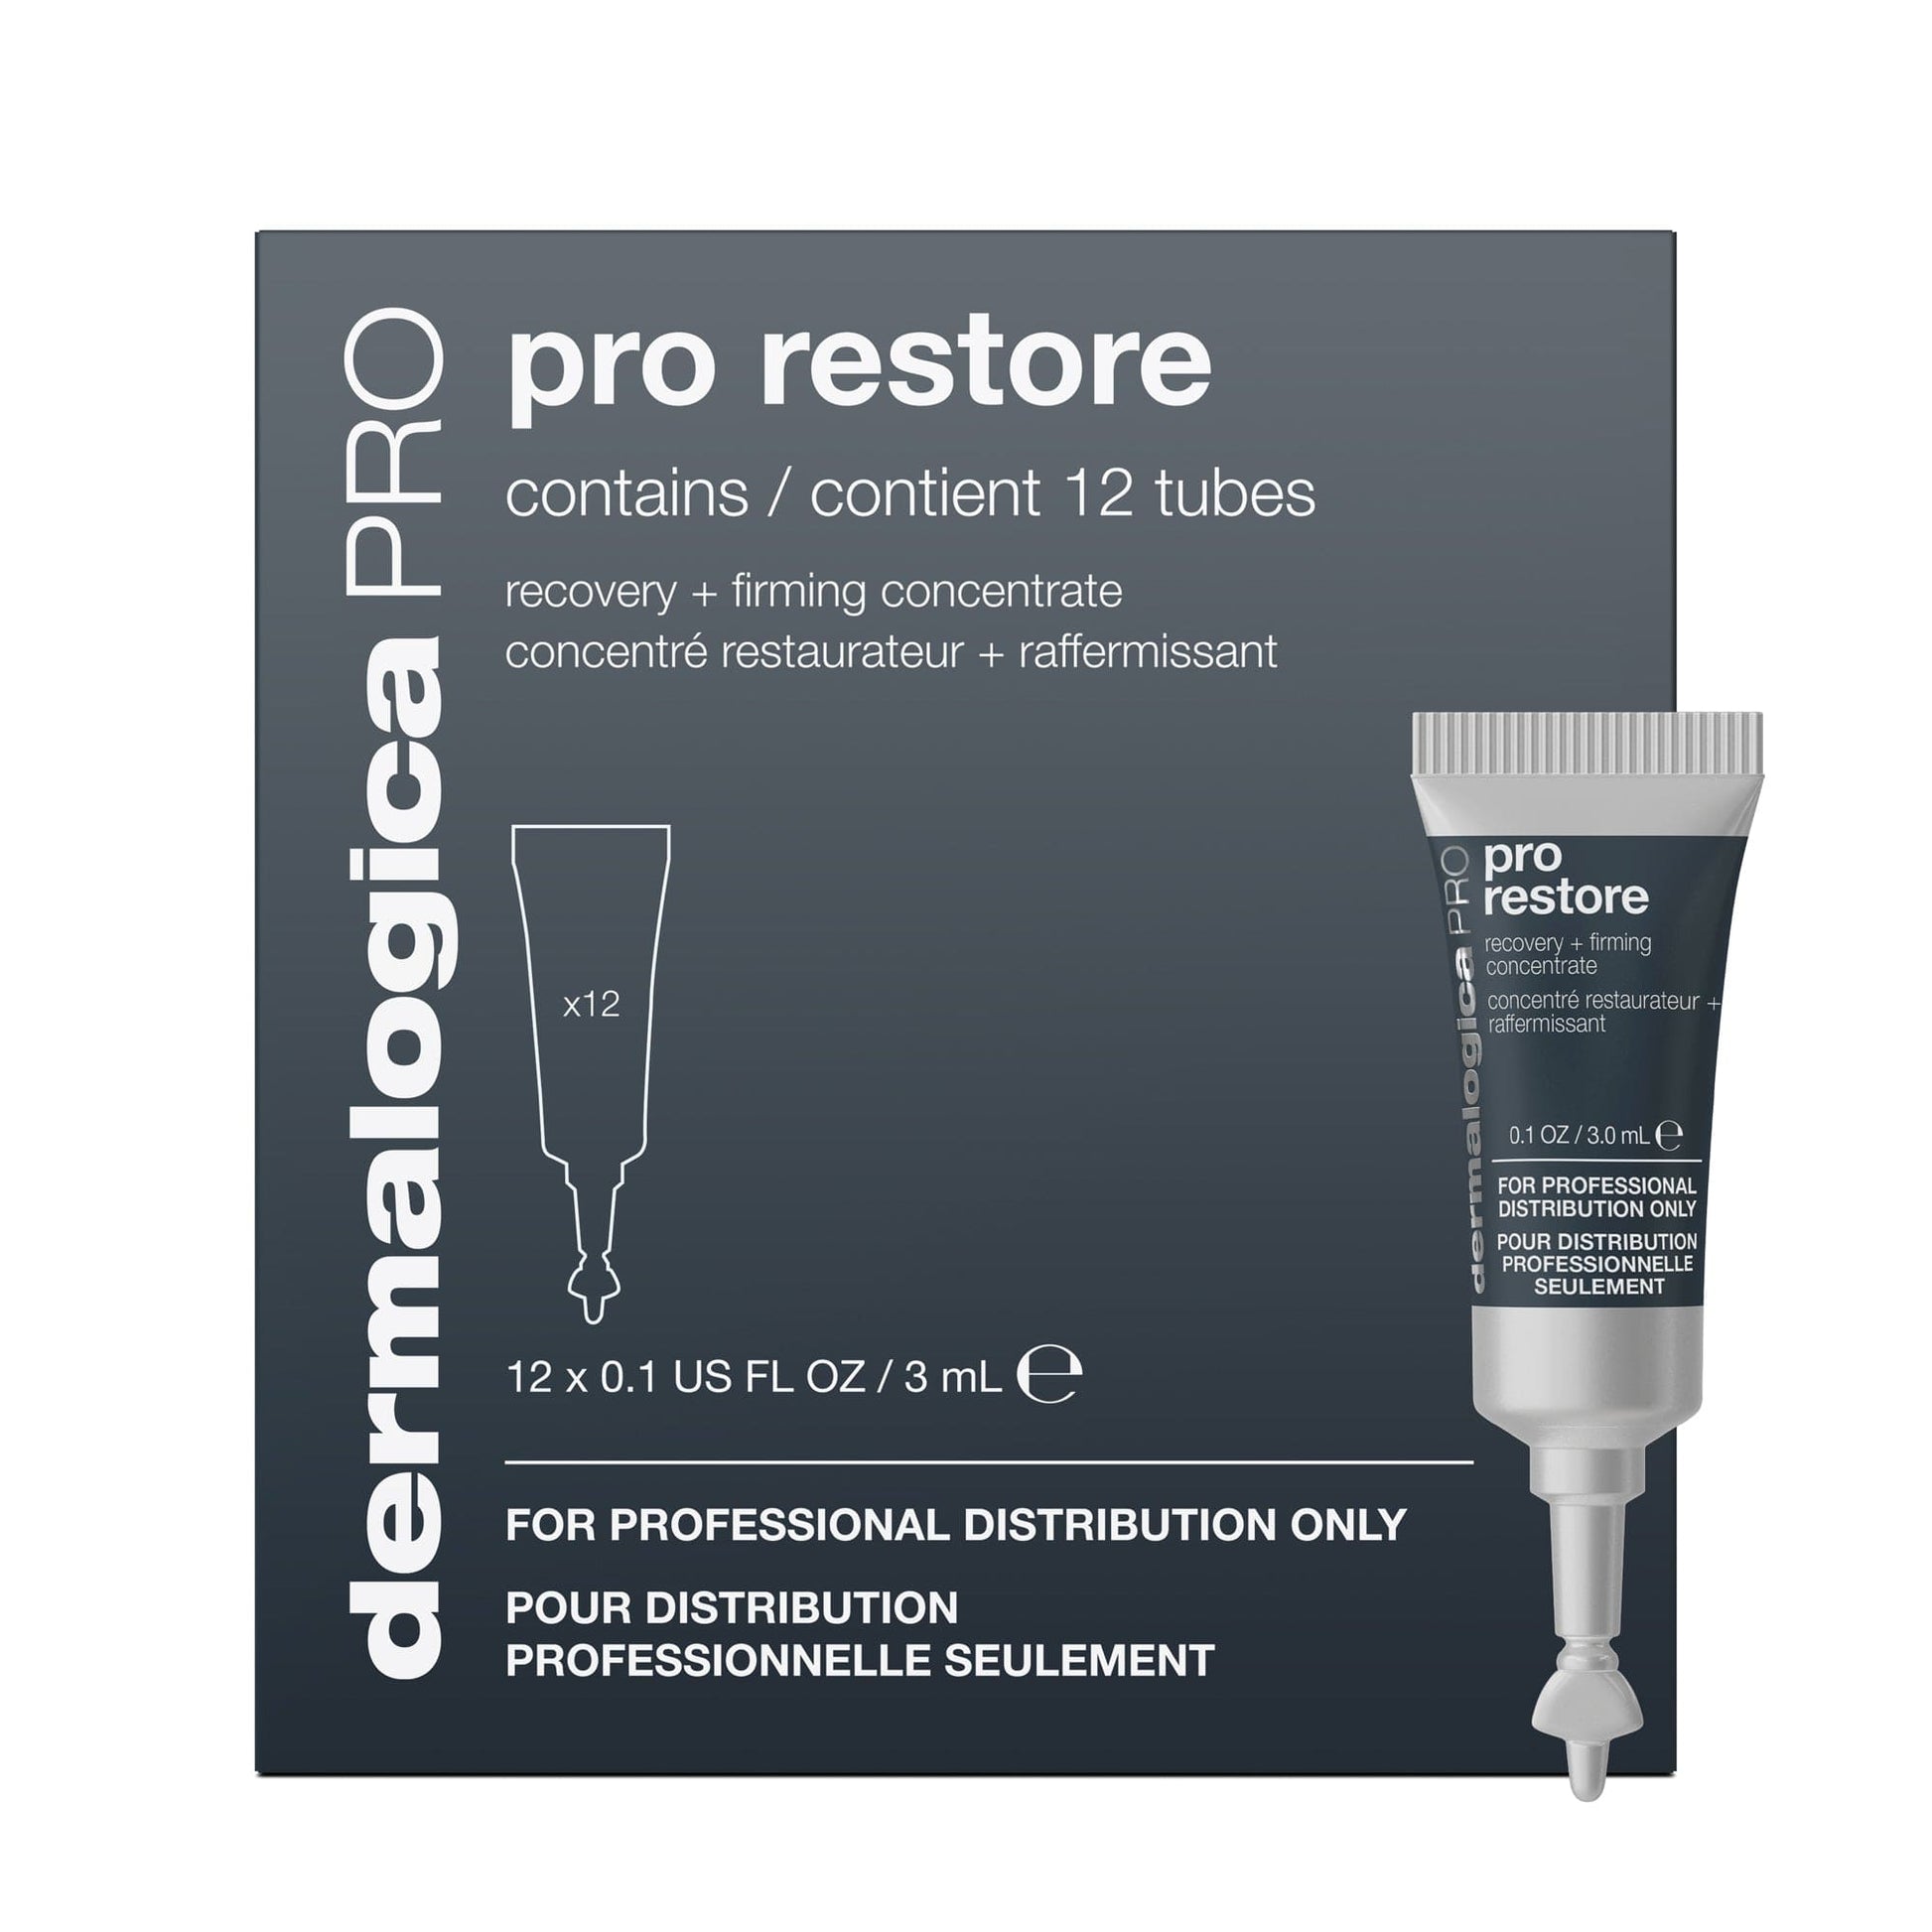 Pro Restore – 12x 3 ml bietet eine Reihe professioneller Hautpflegebehandlungen, darunter chemische Peelings und fortschrittliche technologische Verfahren. Mit Fachwissen sowohl in chemischen Peelings als auch in apparativen Behandlungen sind unsere